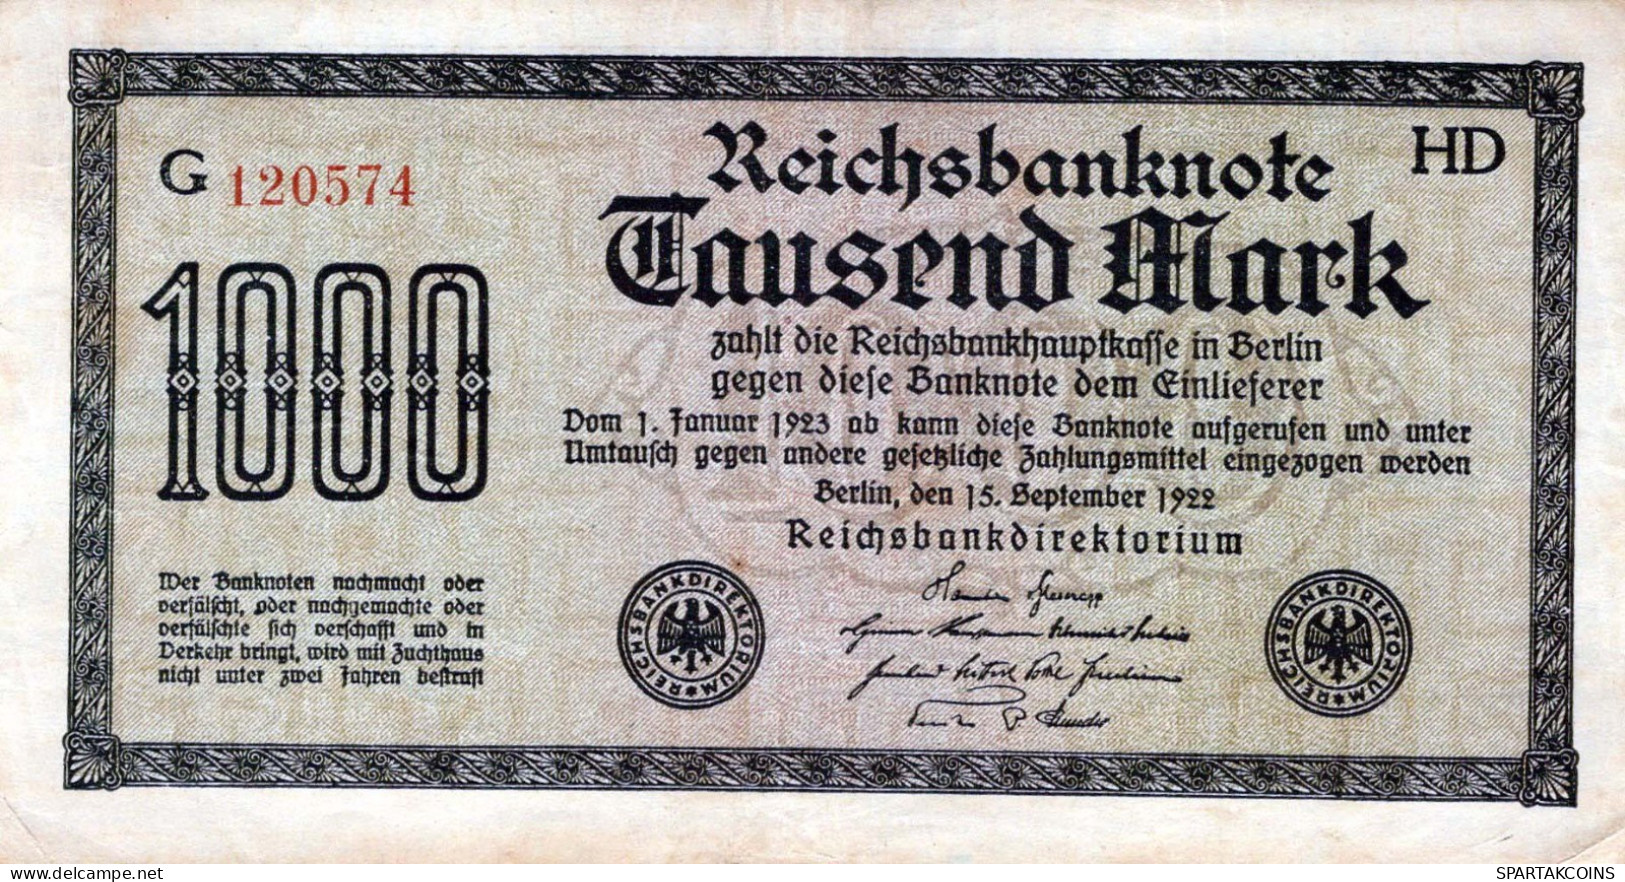 1000 MARK 1922 Stadt BERLIN DEUTSCHLAND Papiergeld Banknote #PL407 - [11] Local Banknote Issues